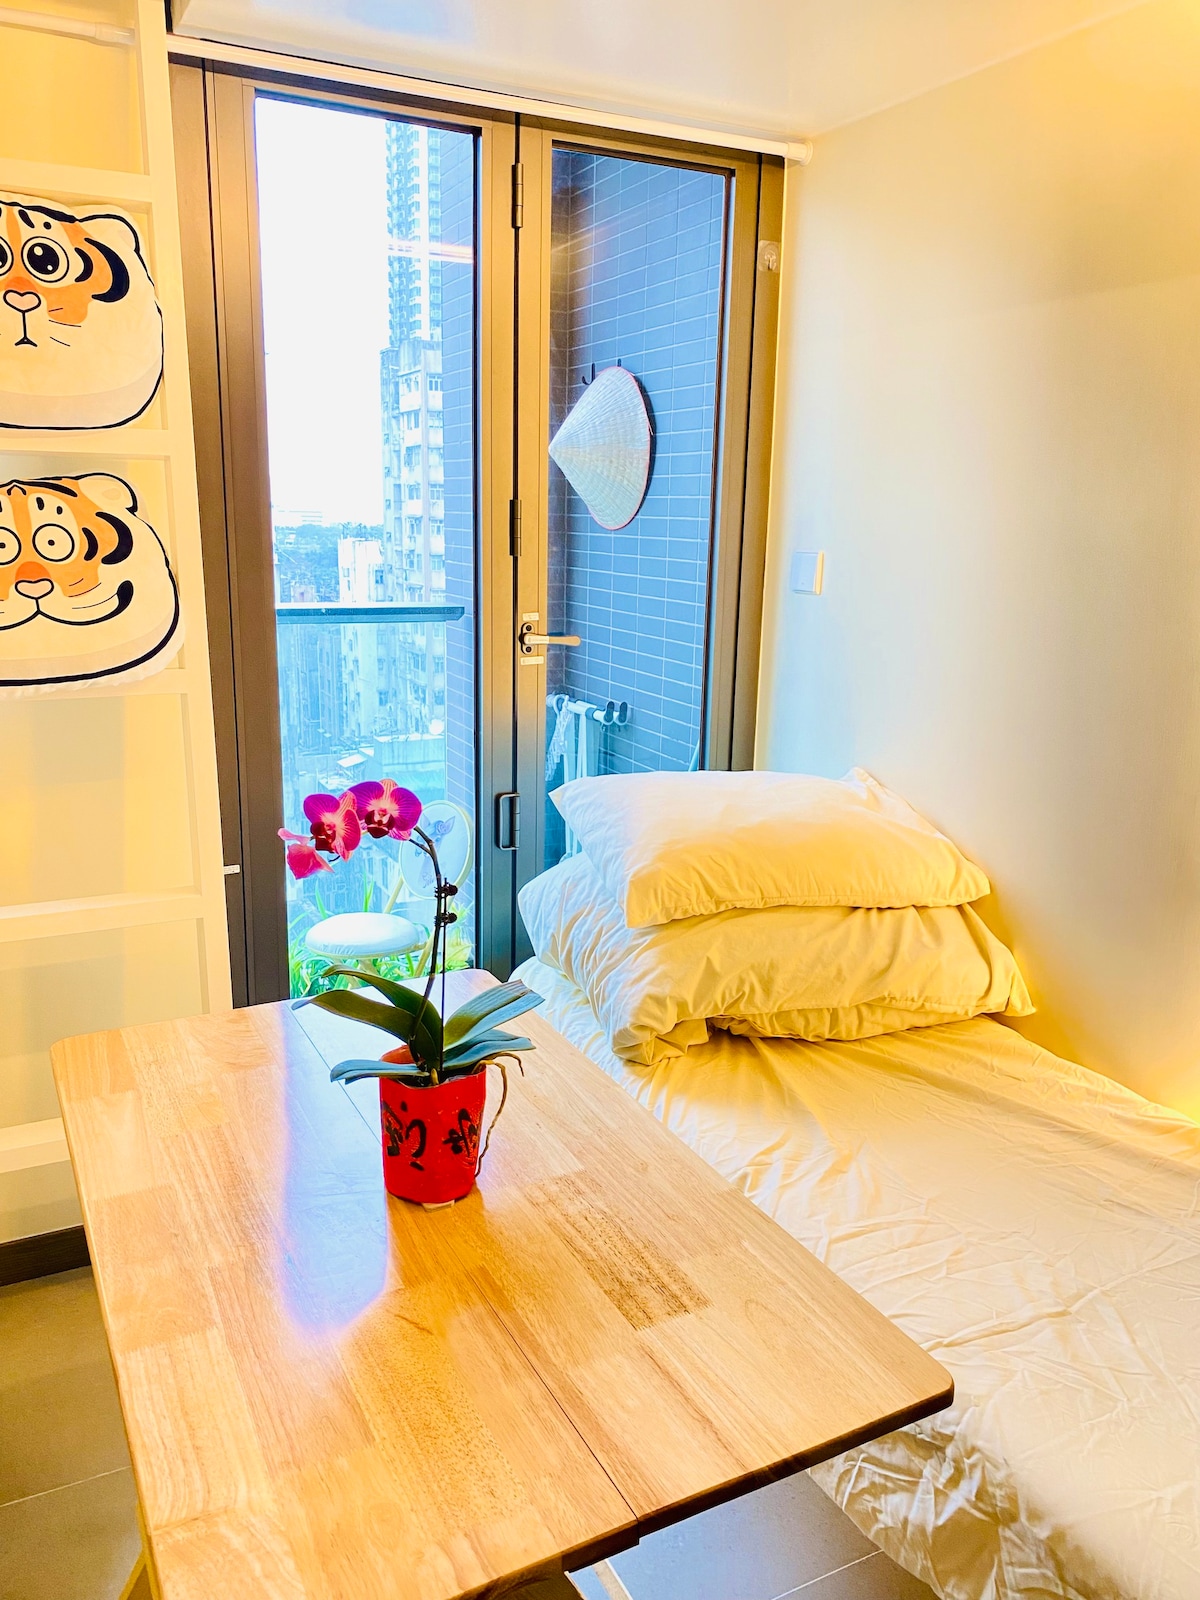 茶琴療癒室 城市心靈綠洲5分鐘地鐵單人房廁 精緻藝術房Tea Qin Healing Kowloon